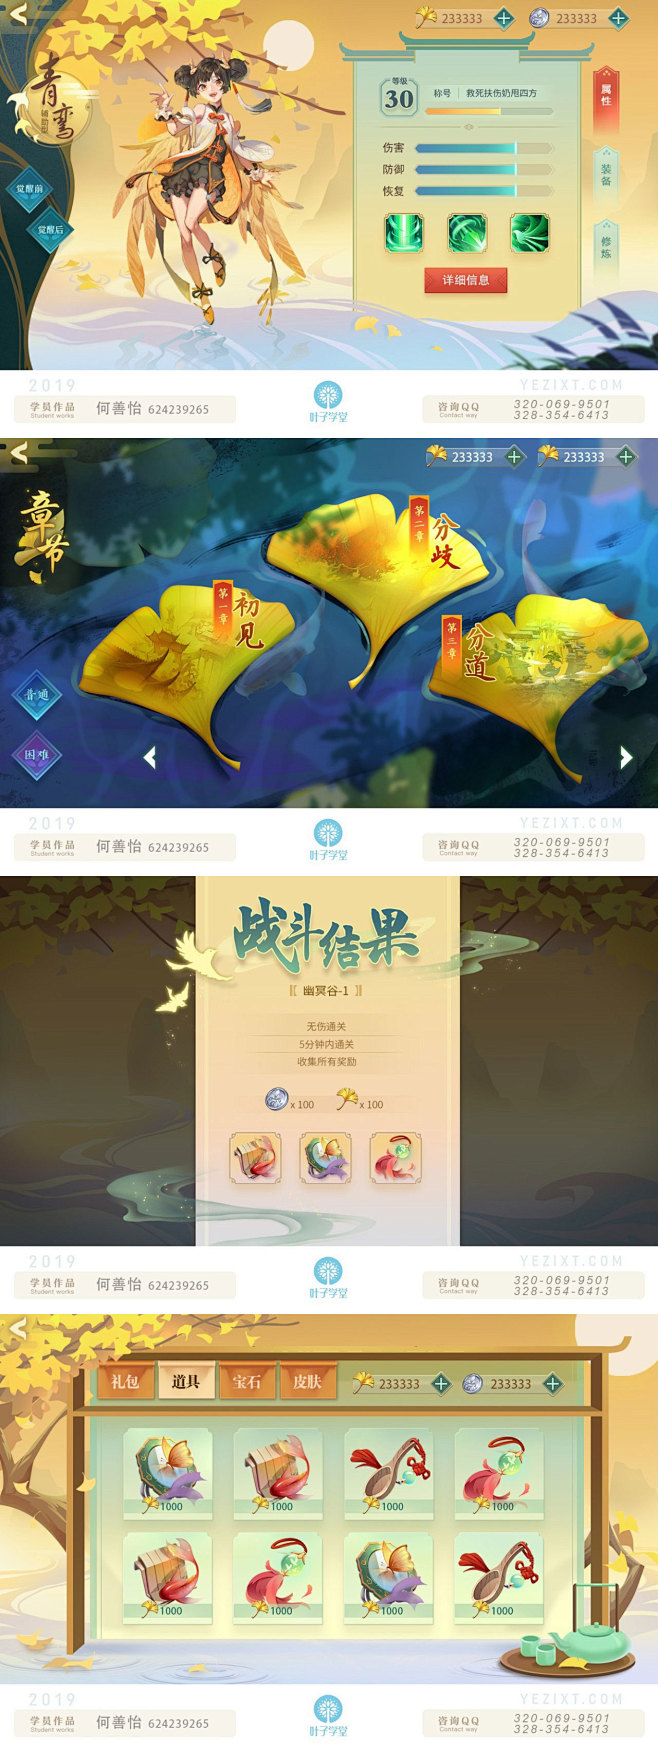 何善怡中国风
游戏UI-游戏界面
微信公...